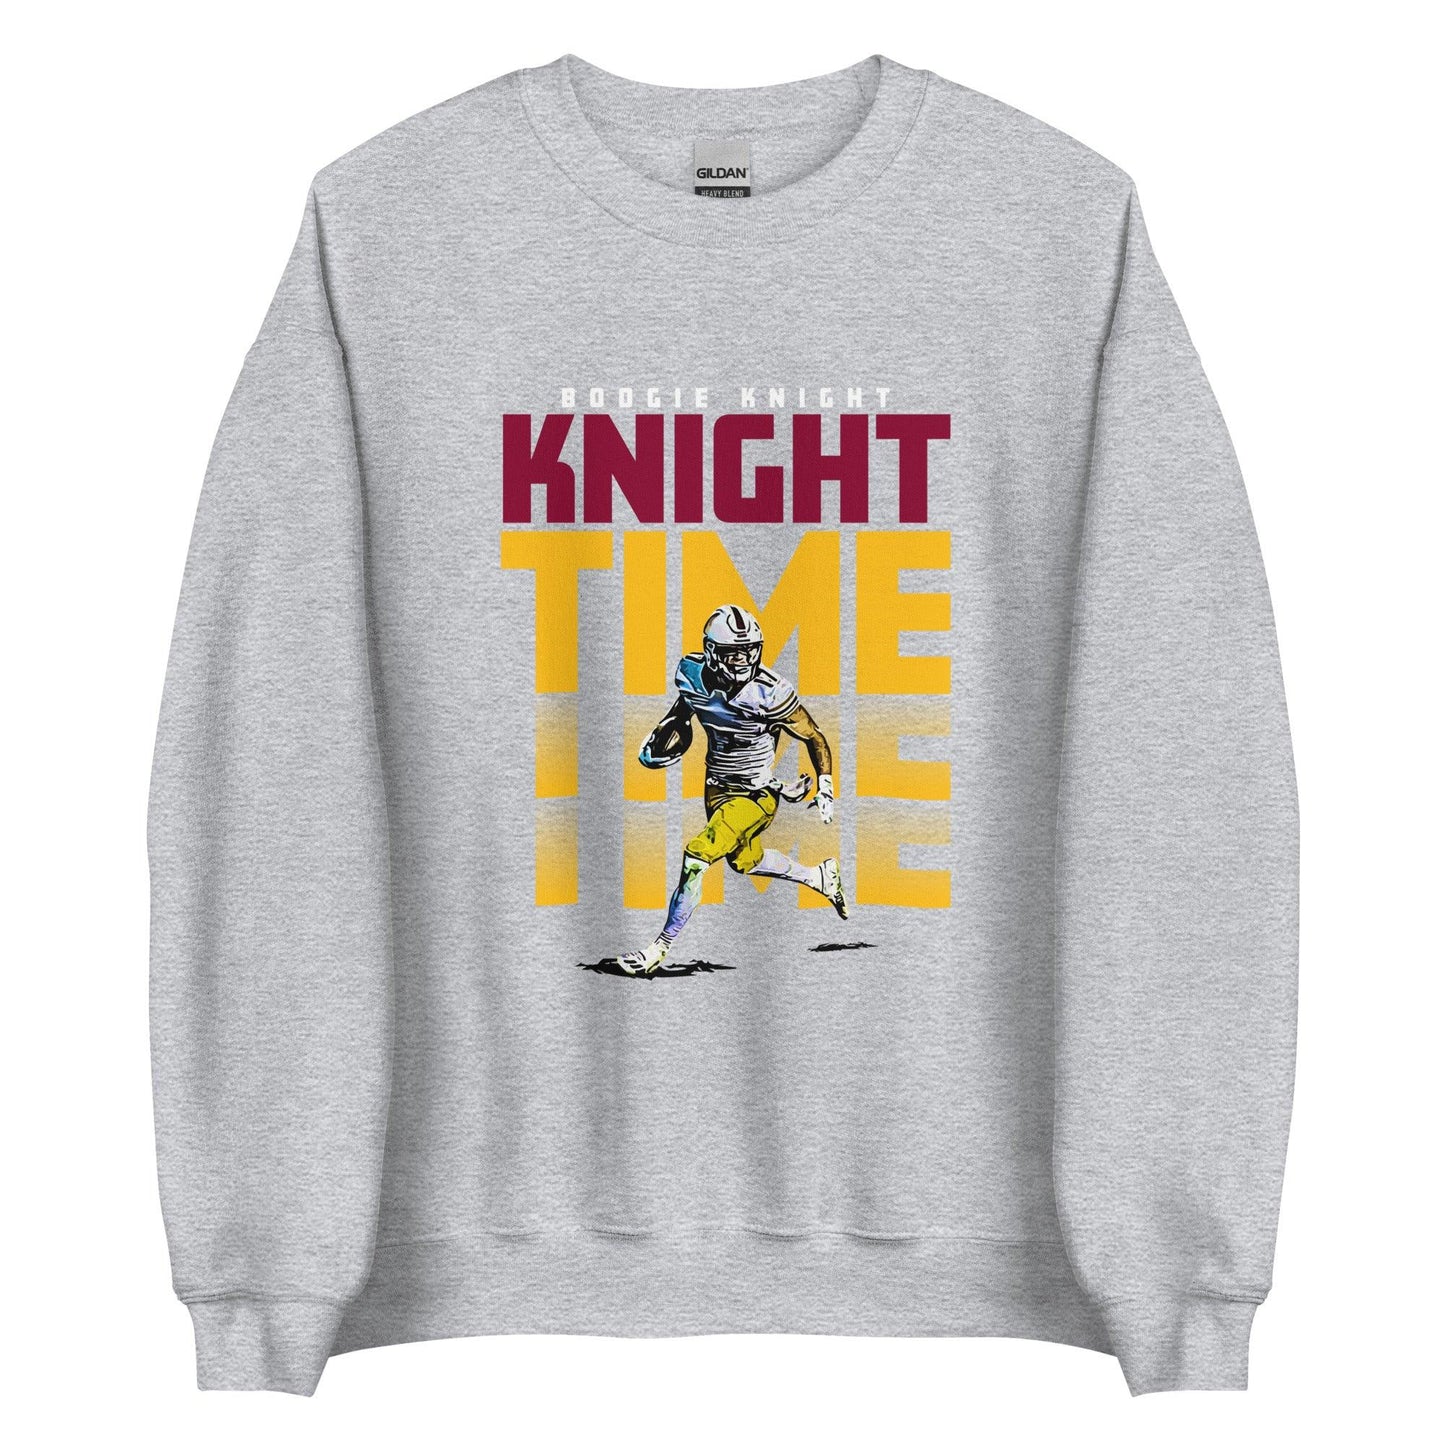 Boogie Knight "Night Time" Sweatshirt - Fan Arch